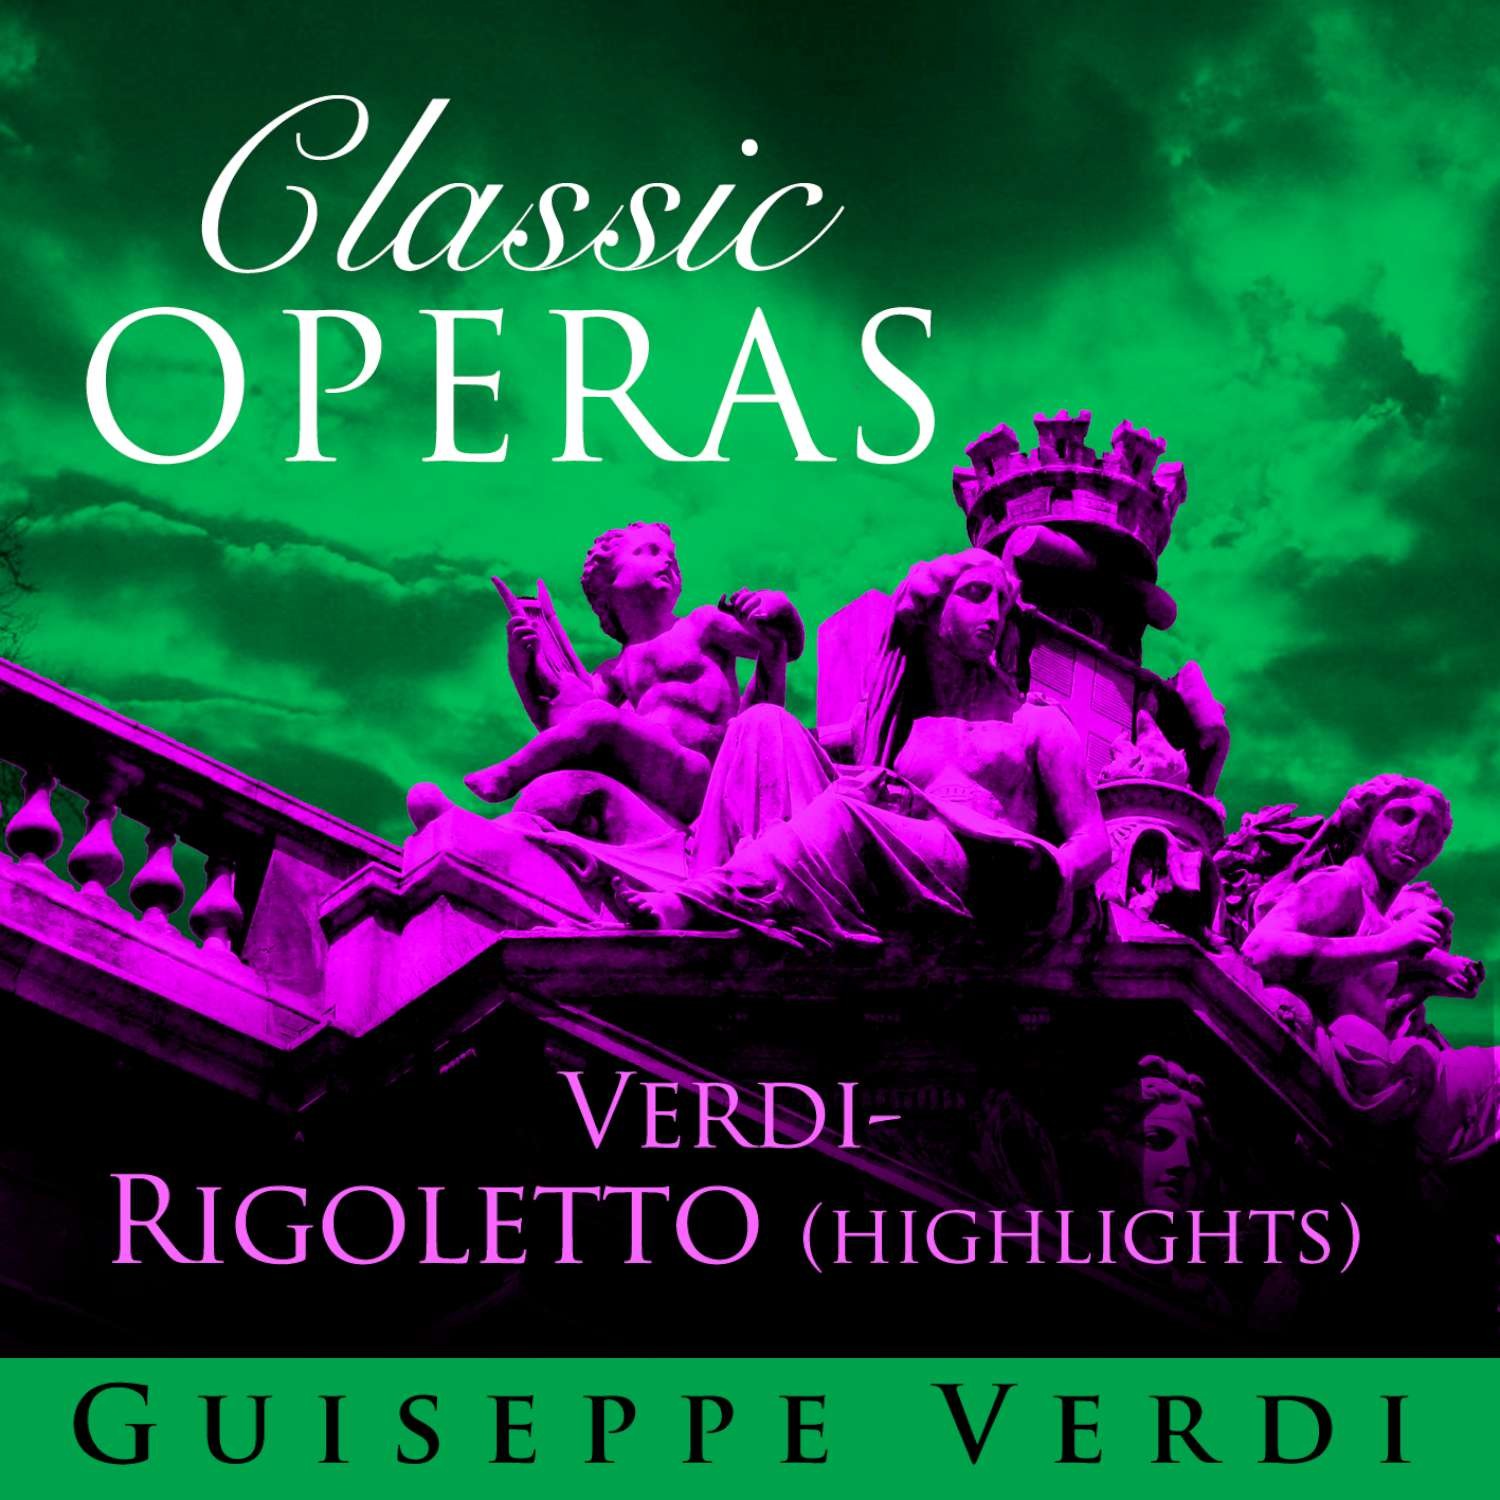 Verdi: Rigoletto - la Donna e Mobile